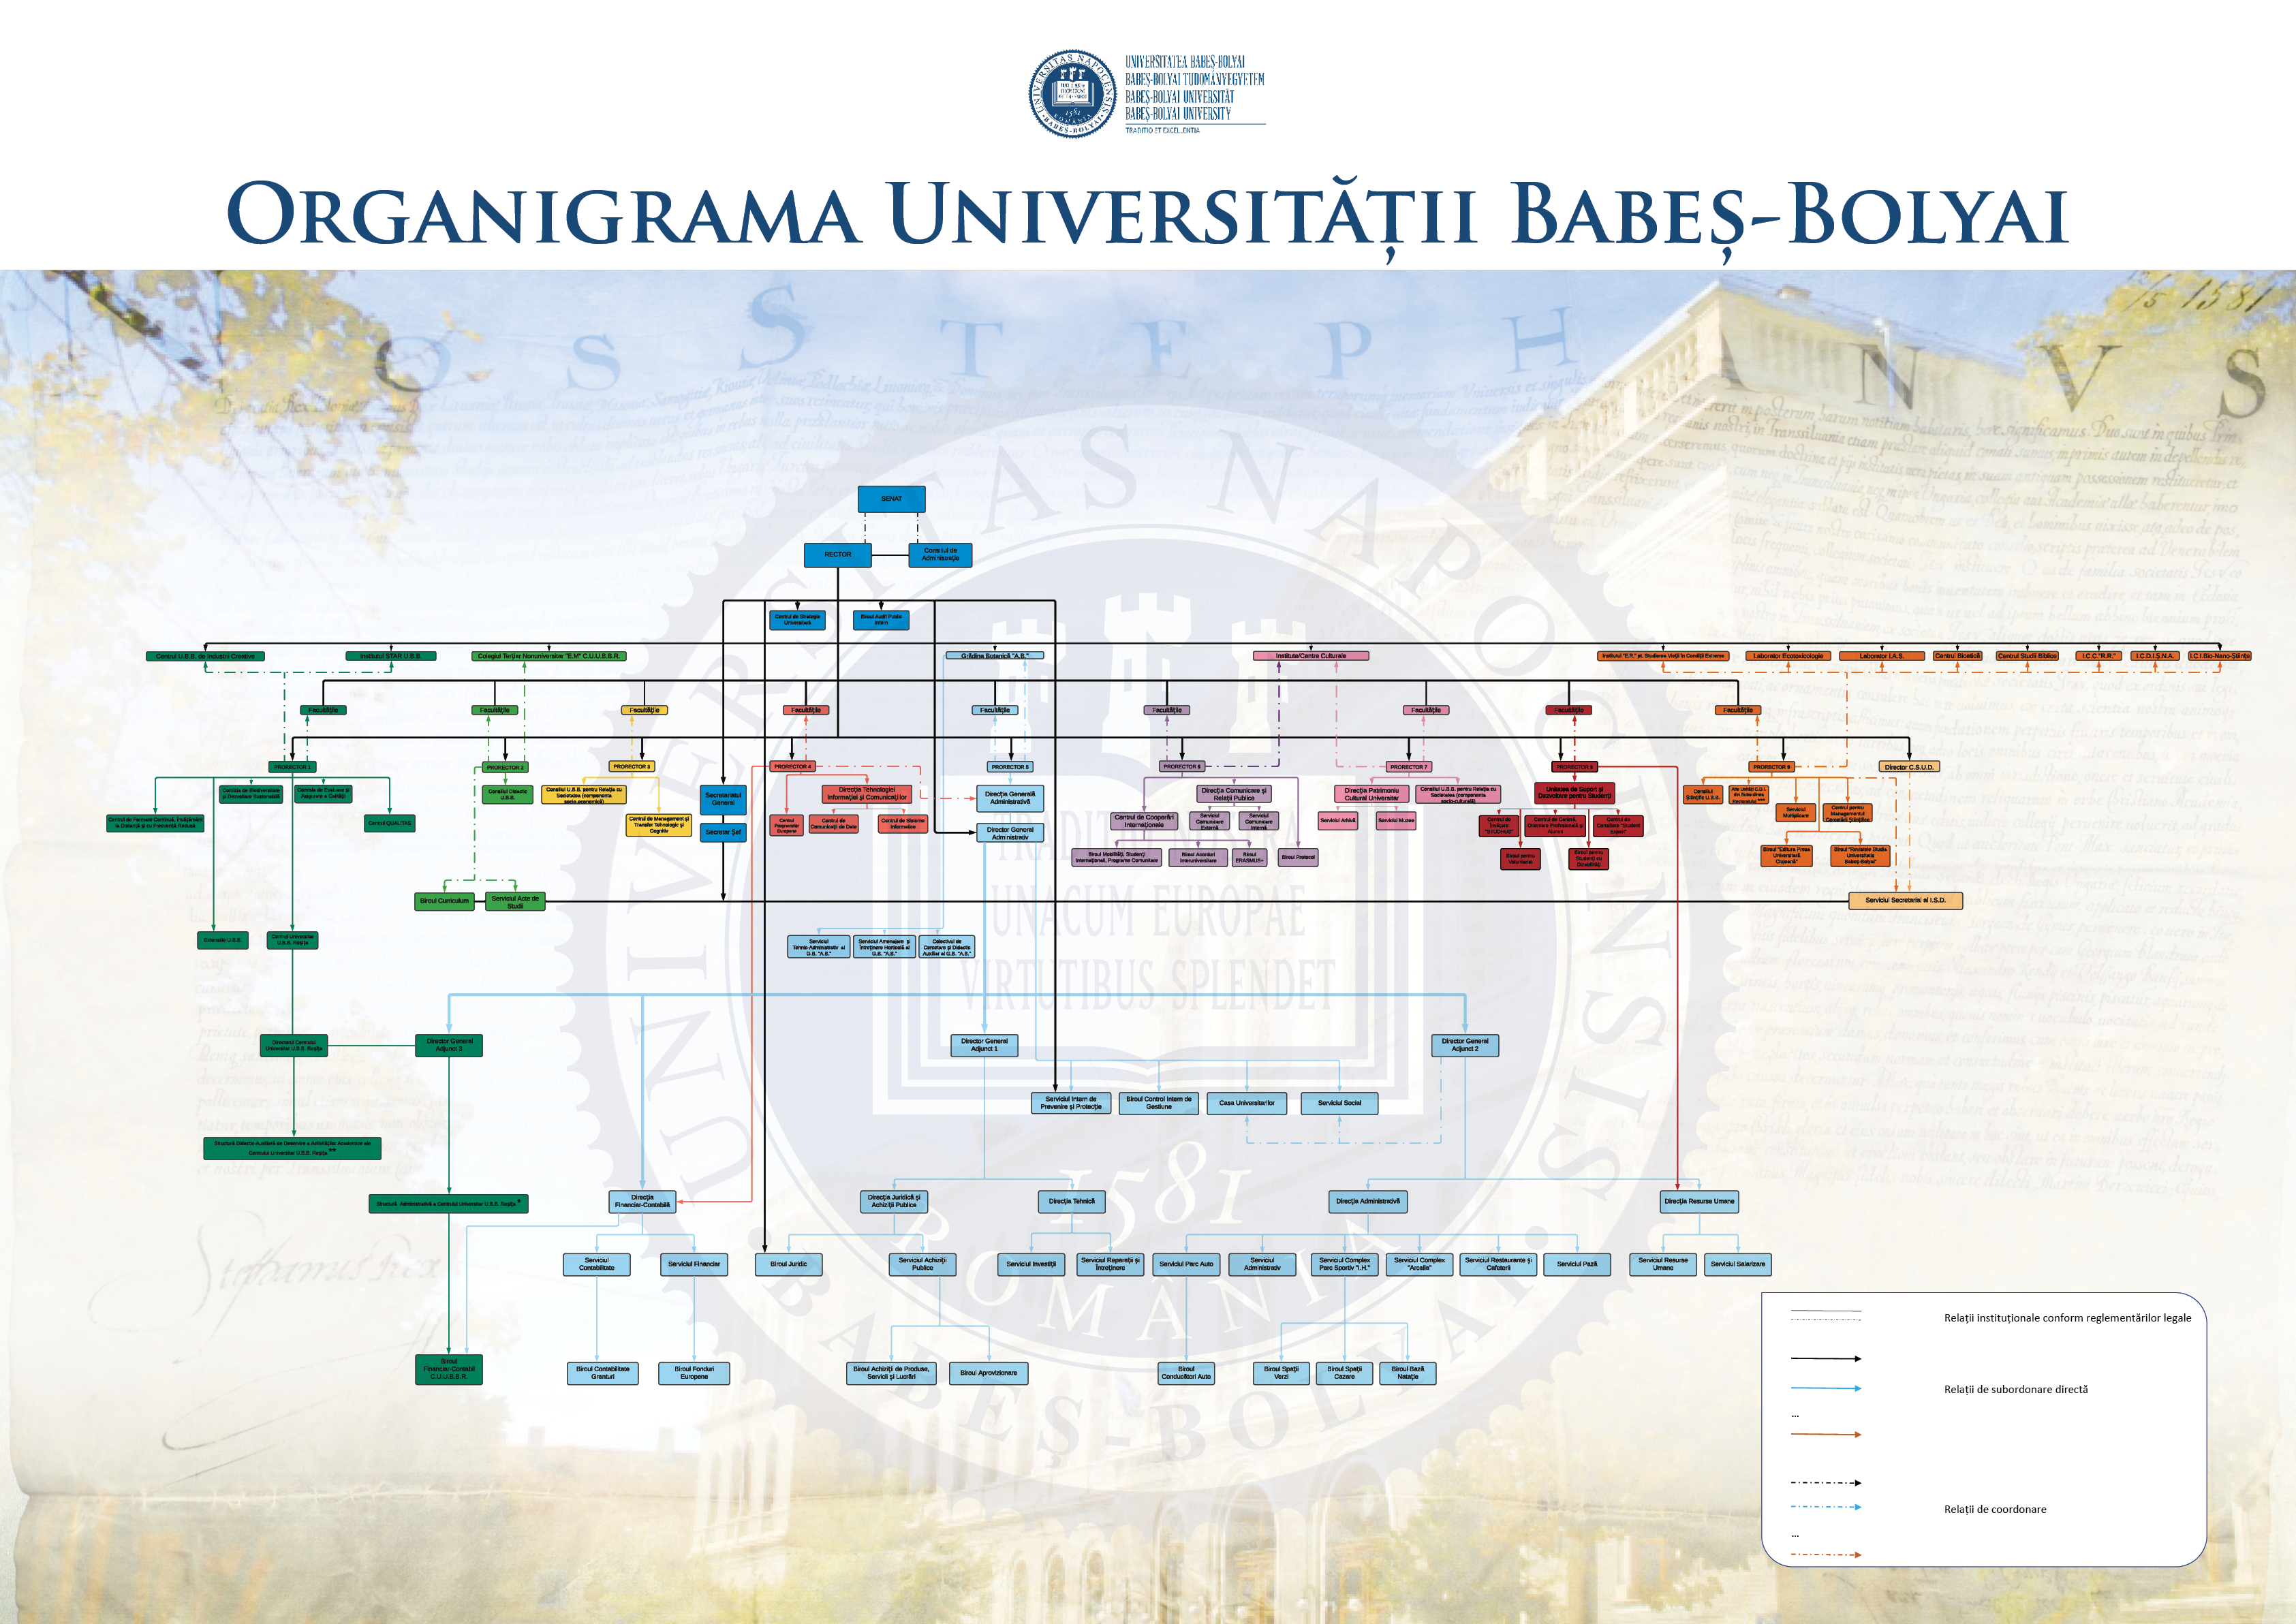 Organisational Chart of BBU